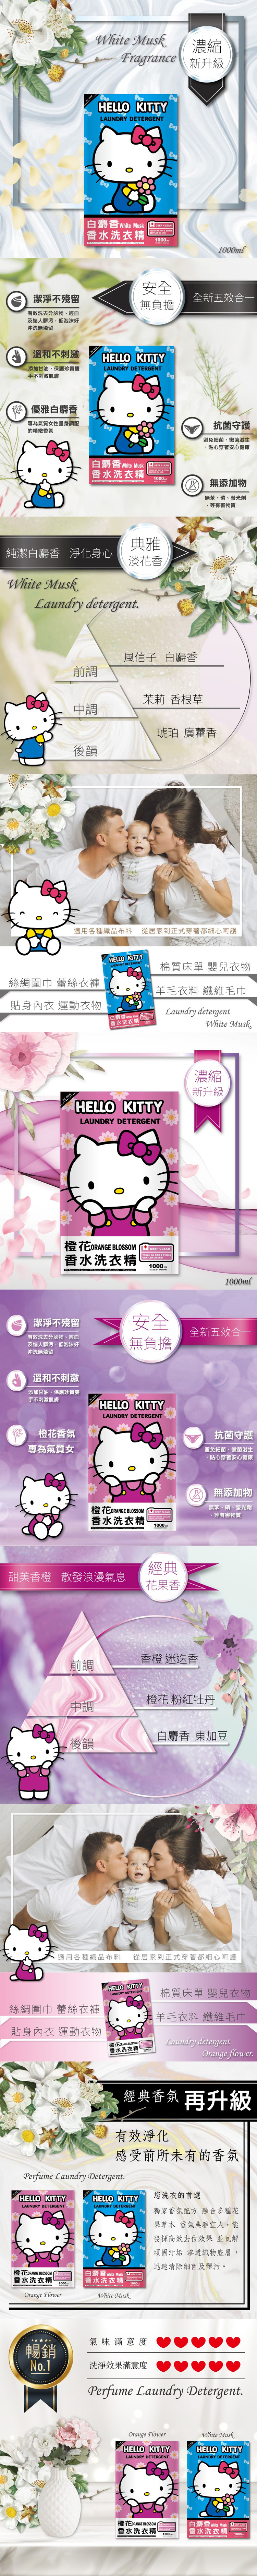 三麗鷗 hello kitty japan 抗菌 japan hello kitty